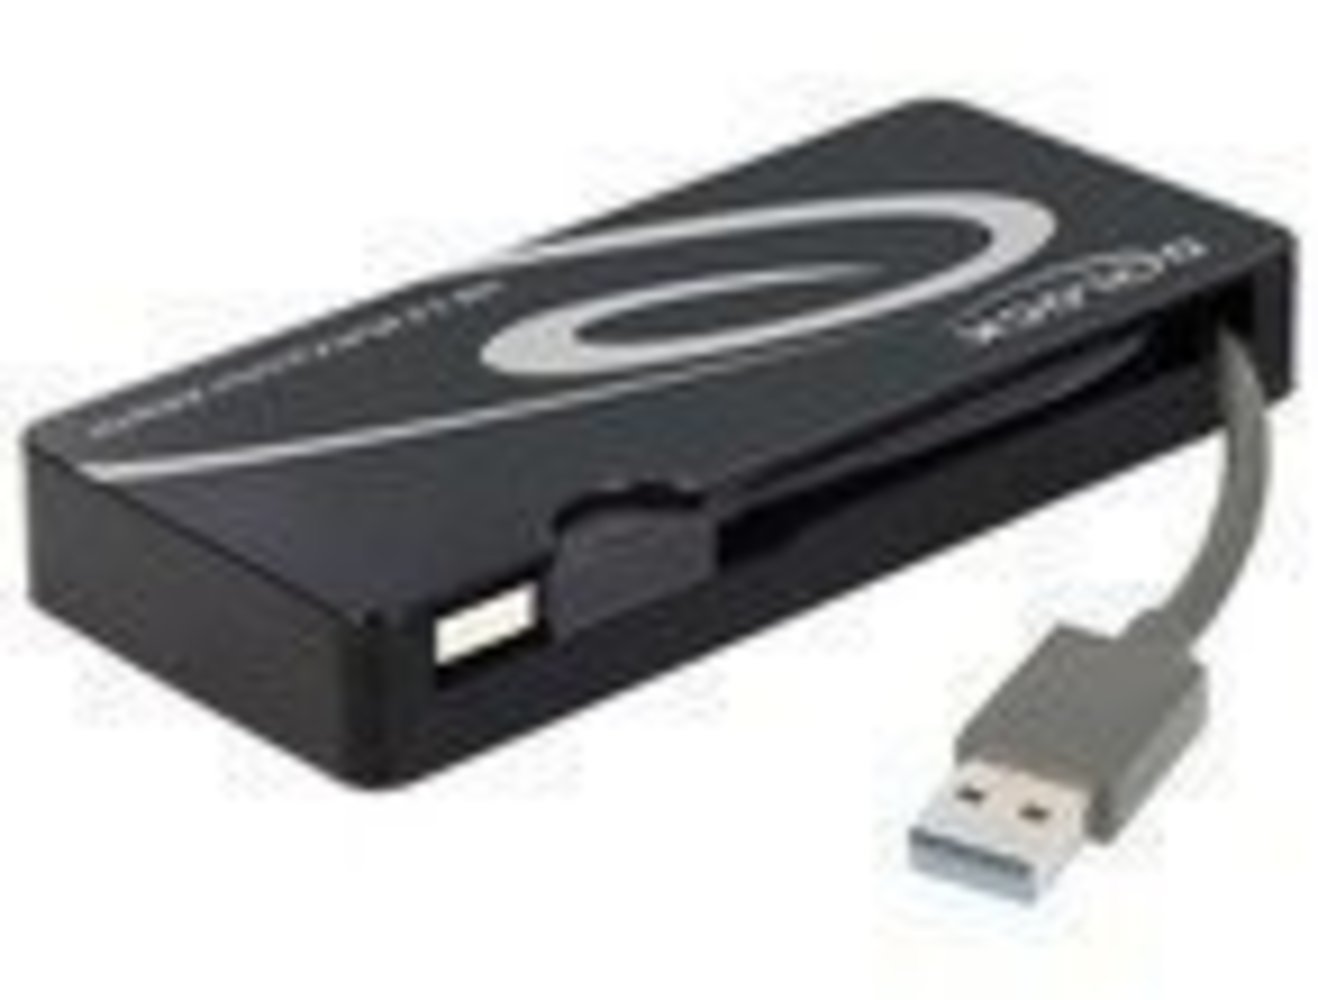 DELOCK Adapter USB 3.0 zu HDMI + VGA + Gigabit LAN + USB 3.0